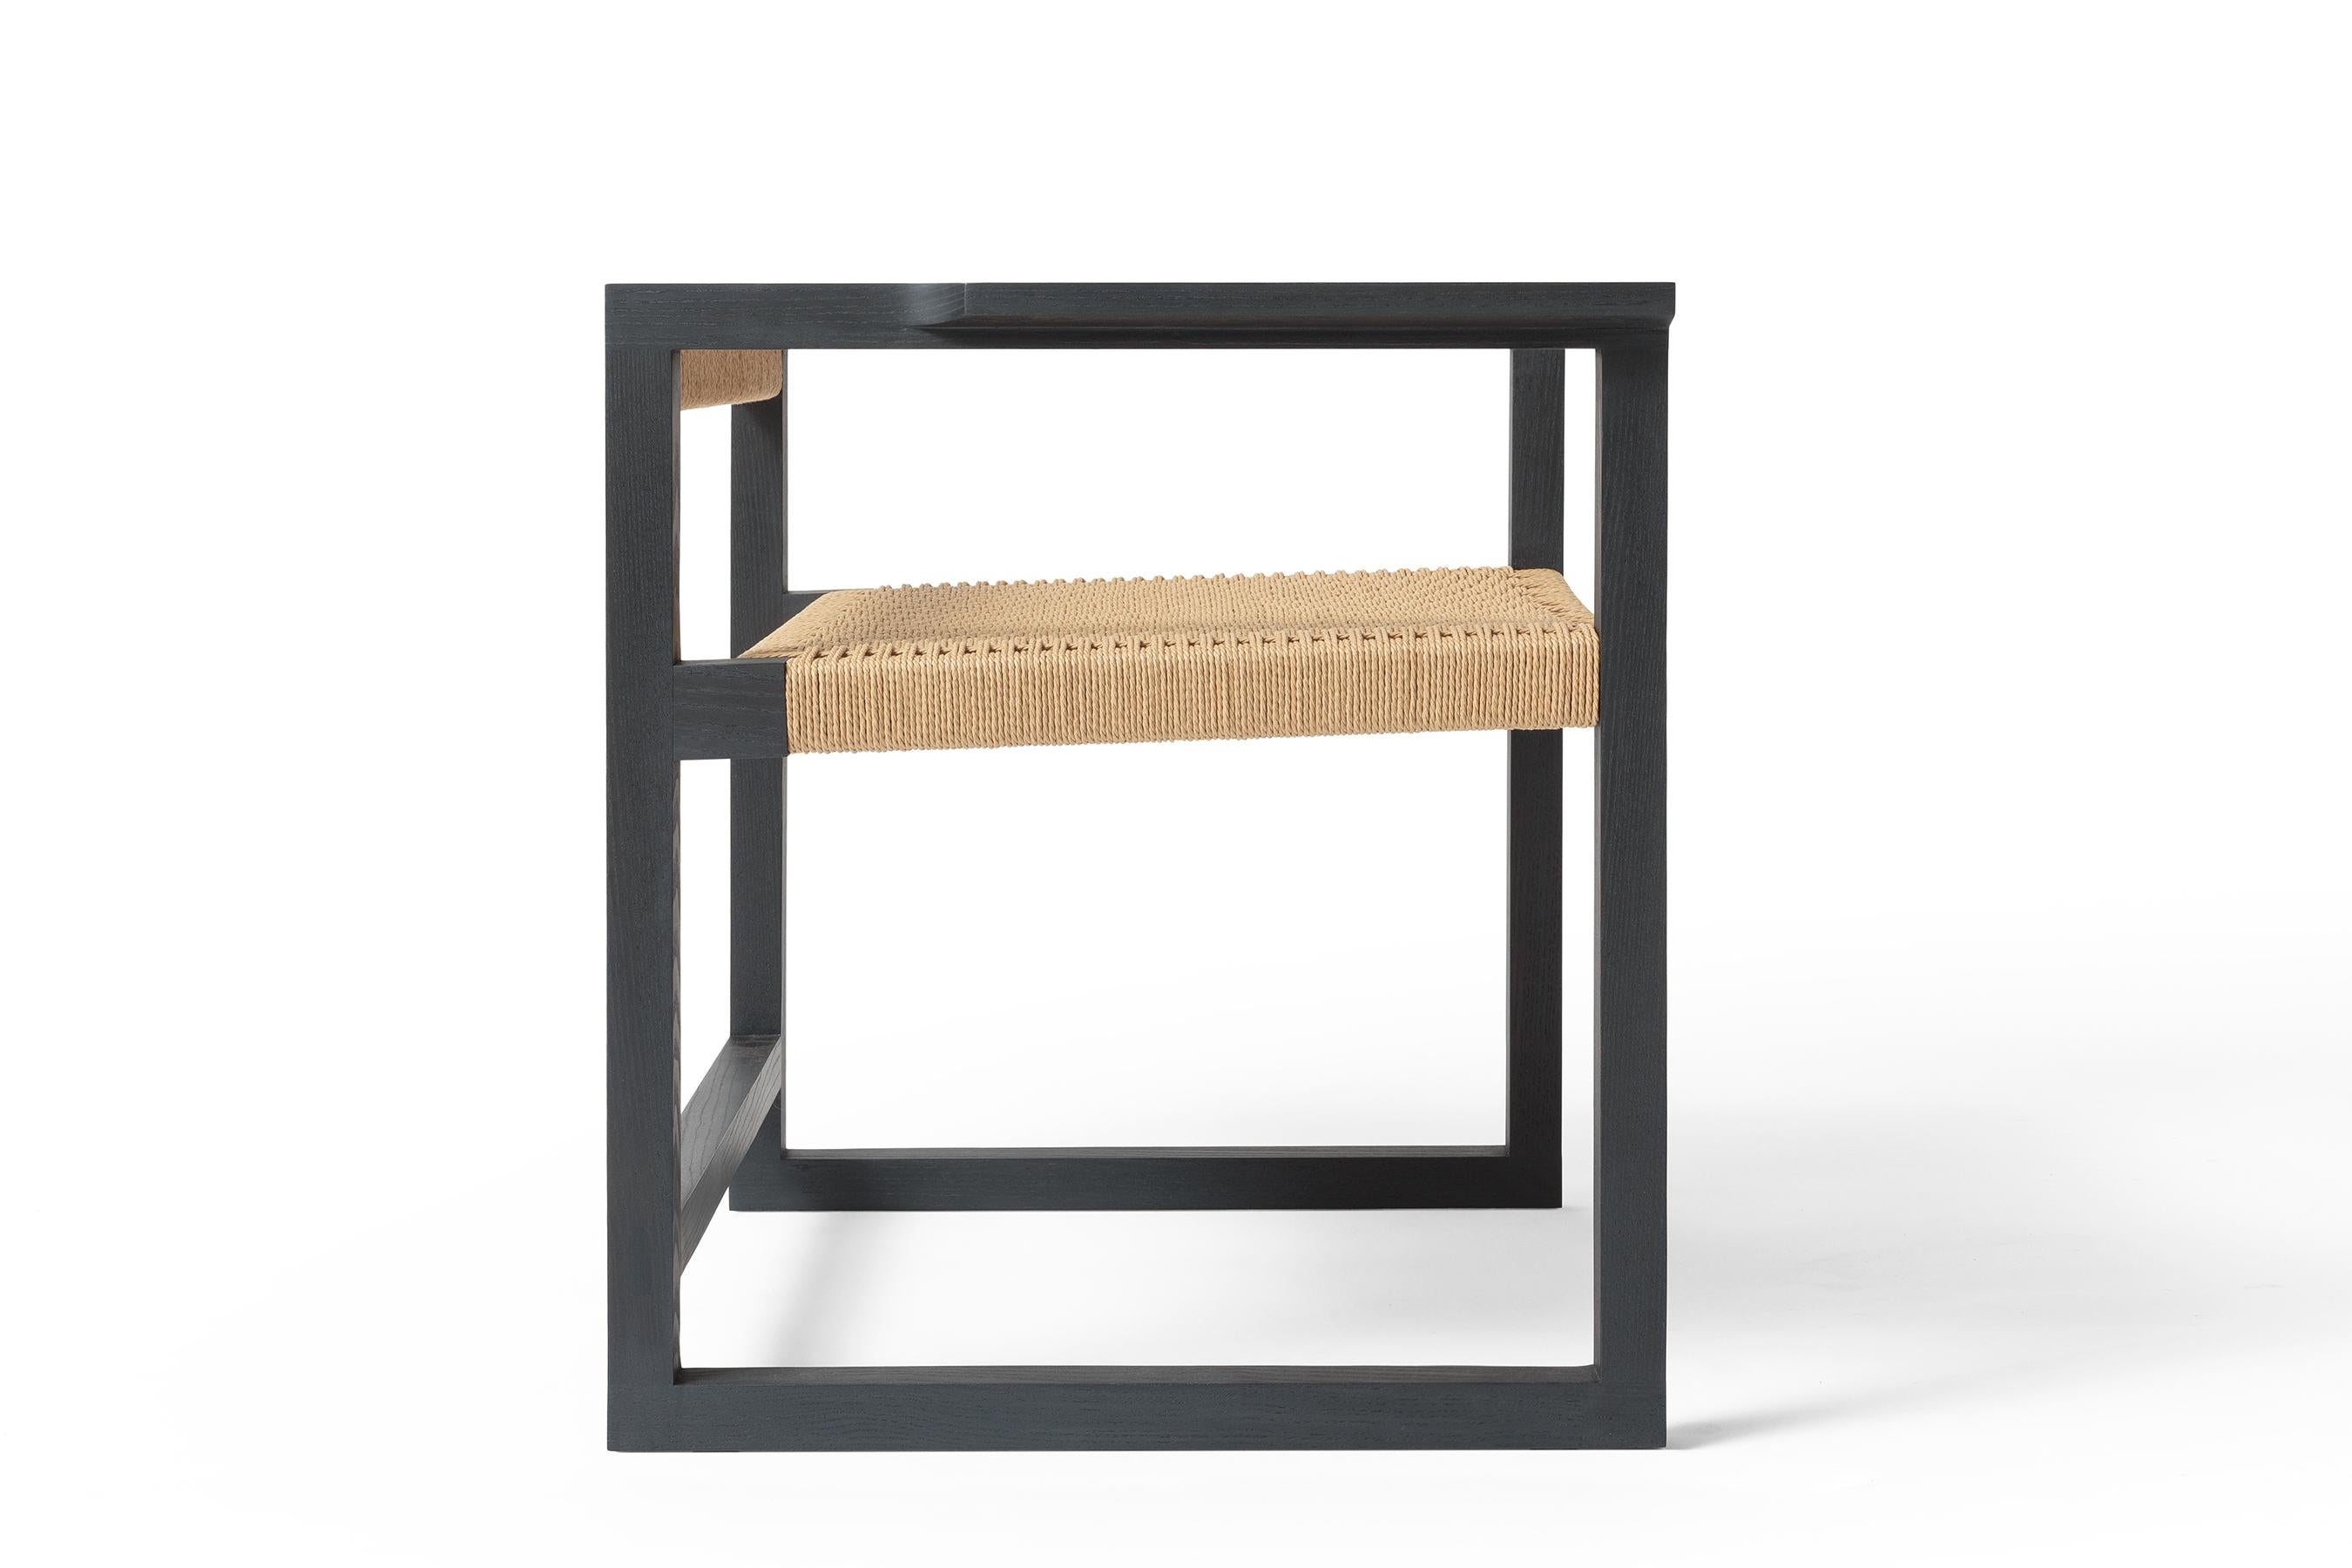 Der Canva-Stuhl mit seinen freiliegenden Tischlerarbeiten und einer Mischung aus harten und weichen Linien zeigt die Liebe zum MATERIAL und zur Handwerkskunst, die mit einem herzlichen Empfang verbunden sind. Der Canva Chair besteht aus einem